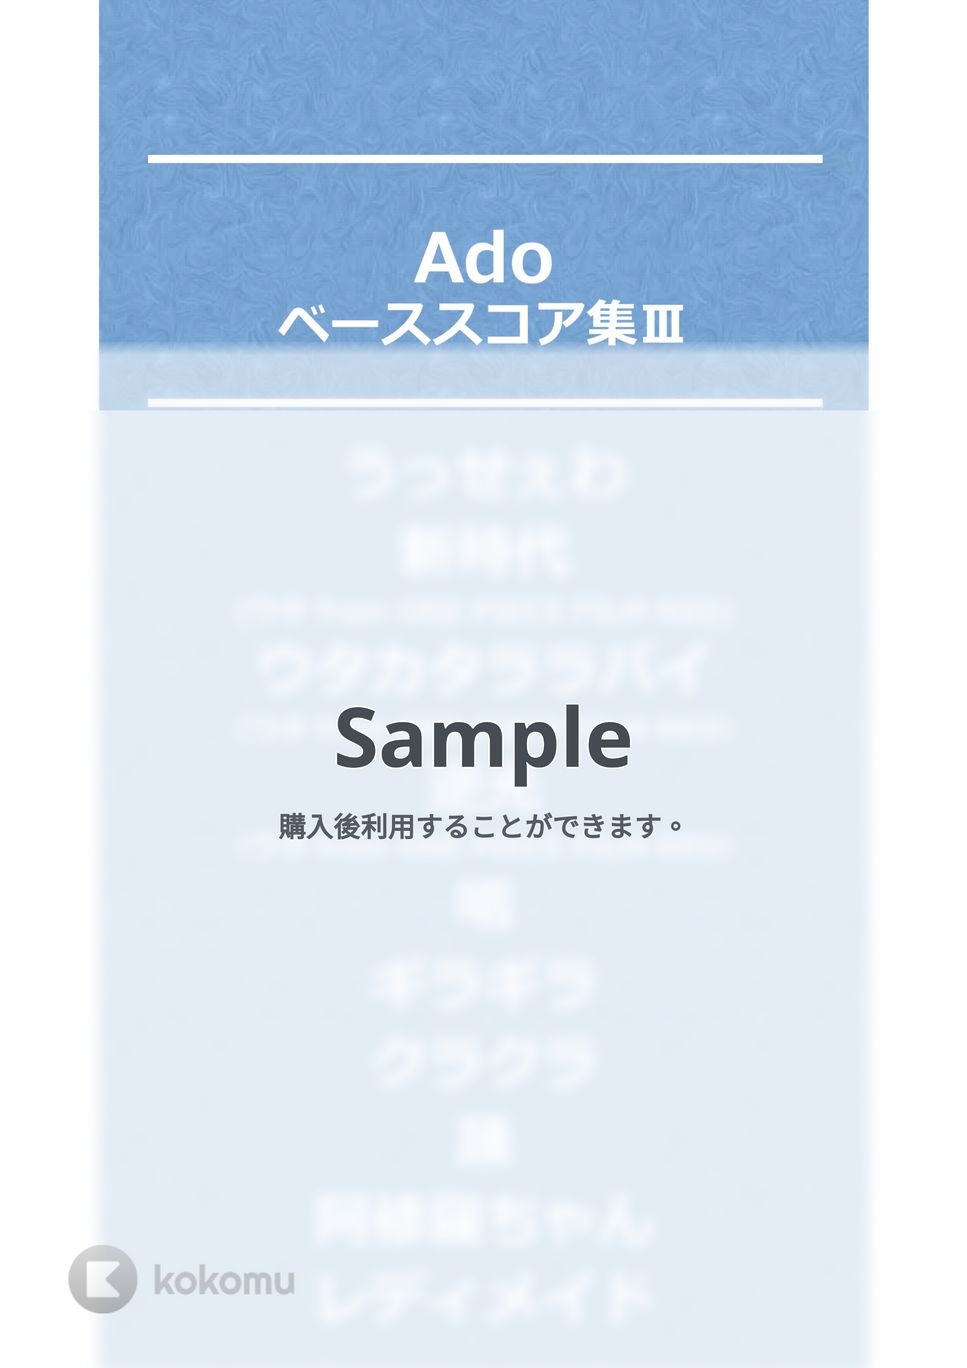 Ado - Ado ベースTAB譜面 10曲セット集Ⅰ by たぶべー